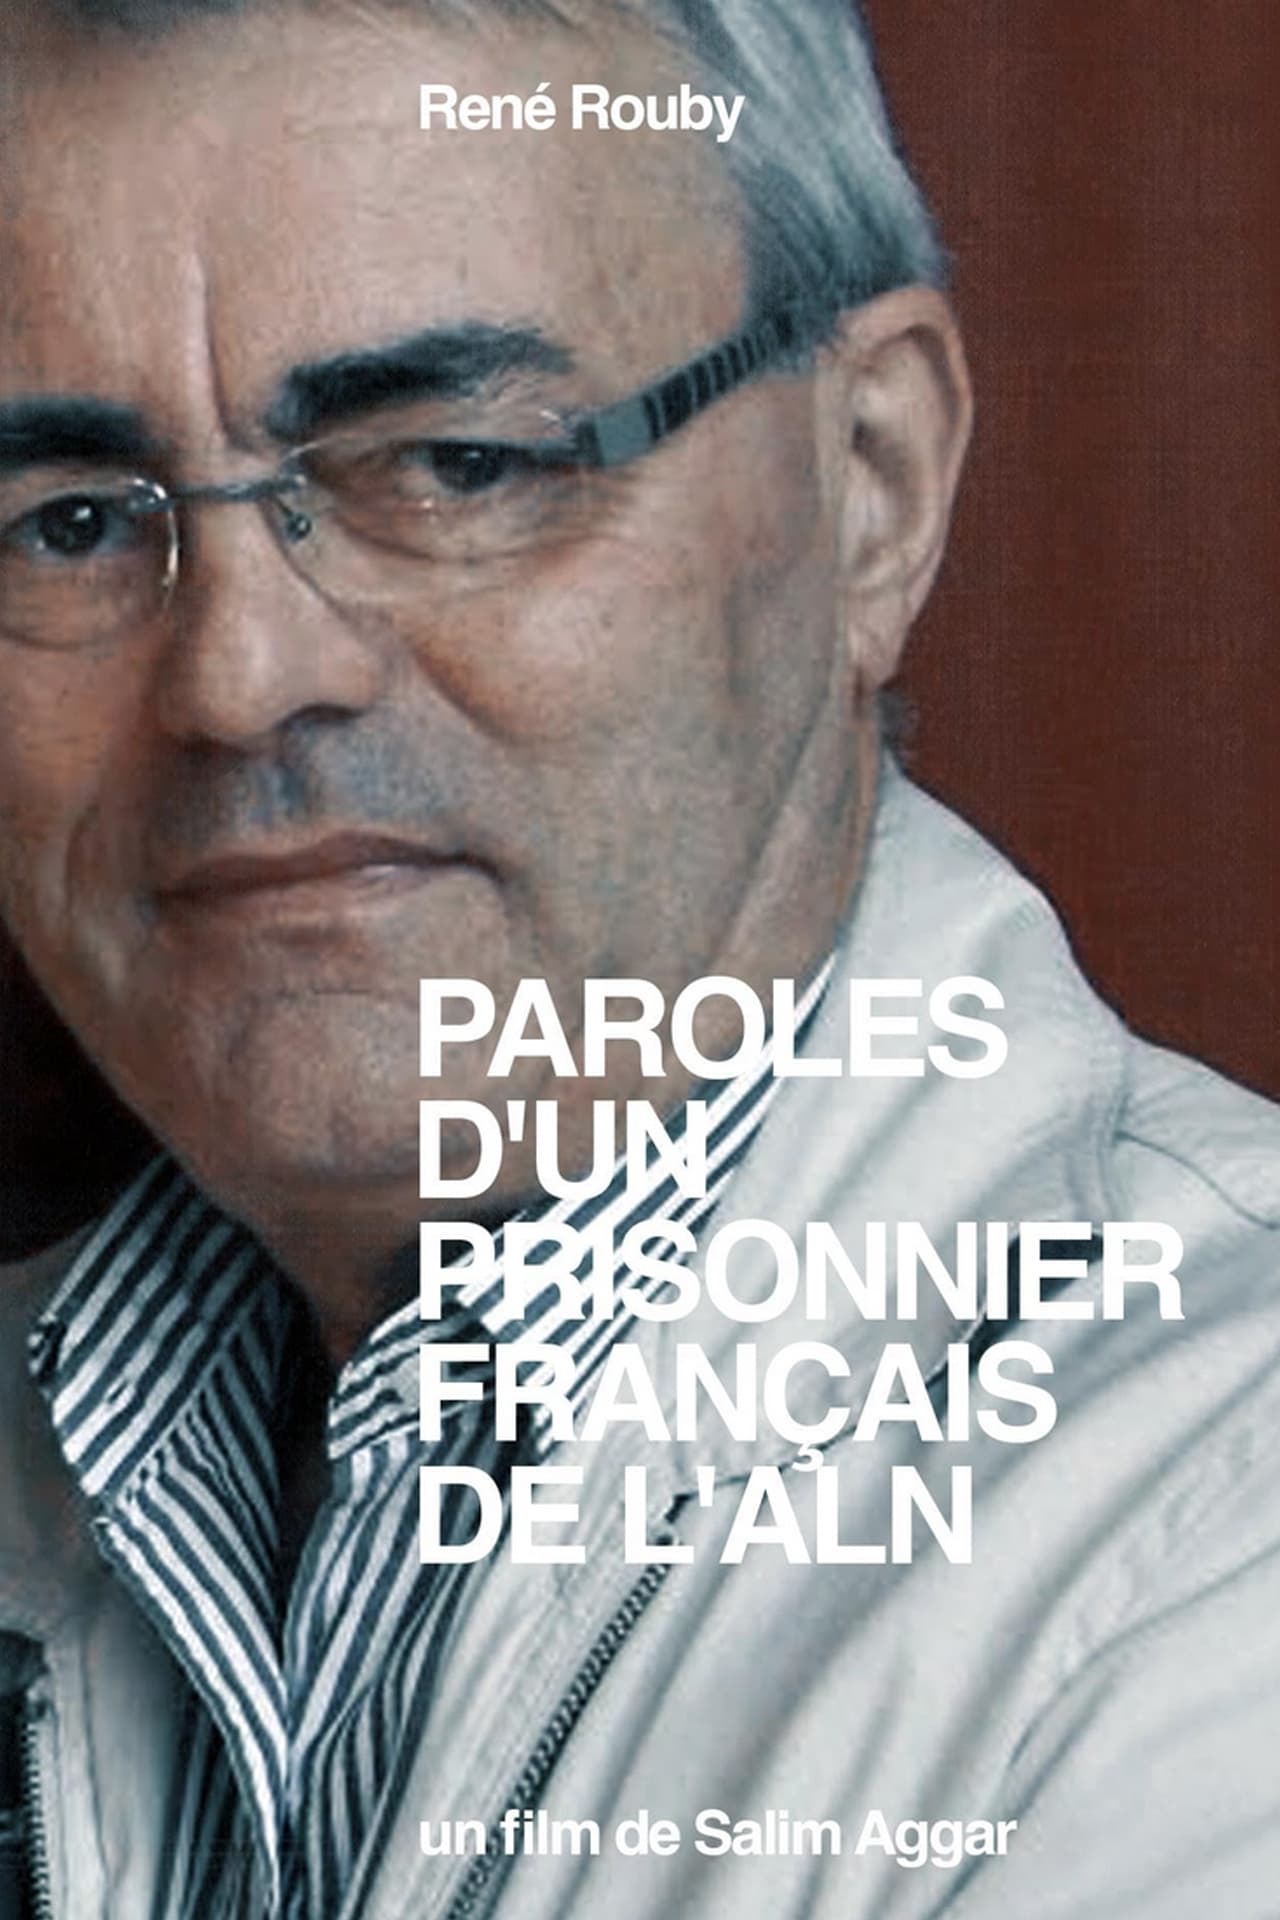 Paroles d'un Prisonnier Français de l'ALN